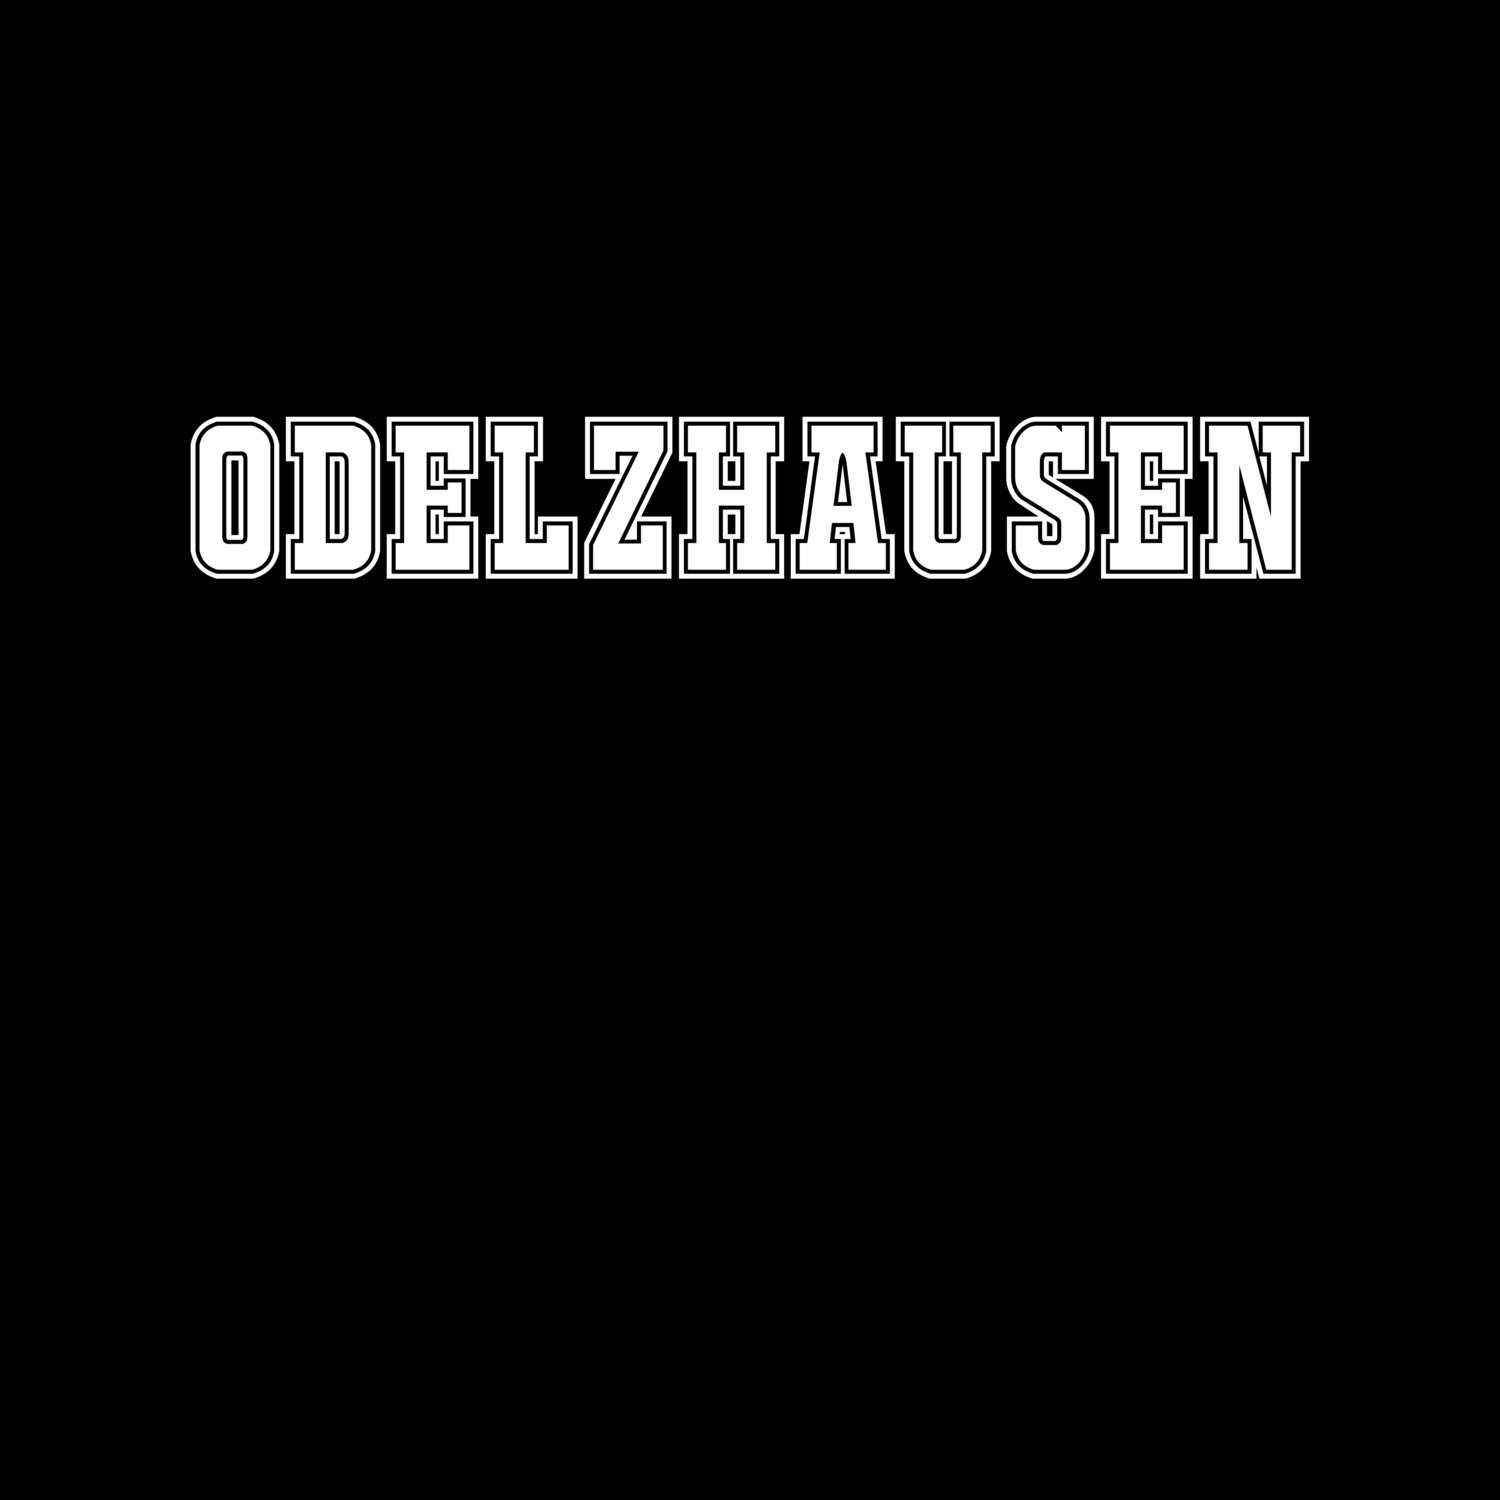 Odelzhausen T-Shirt »Classic«